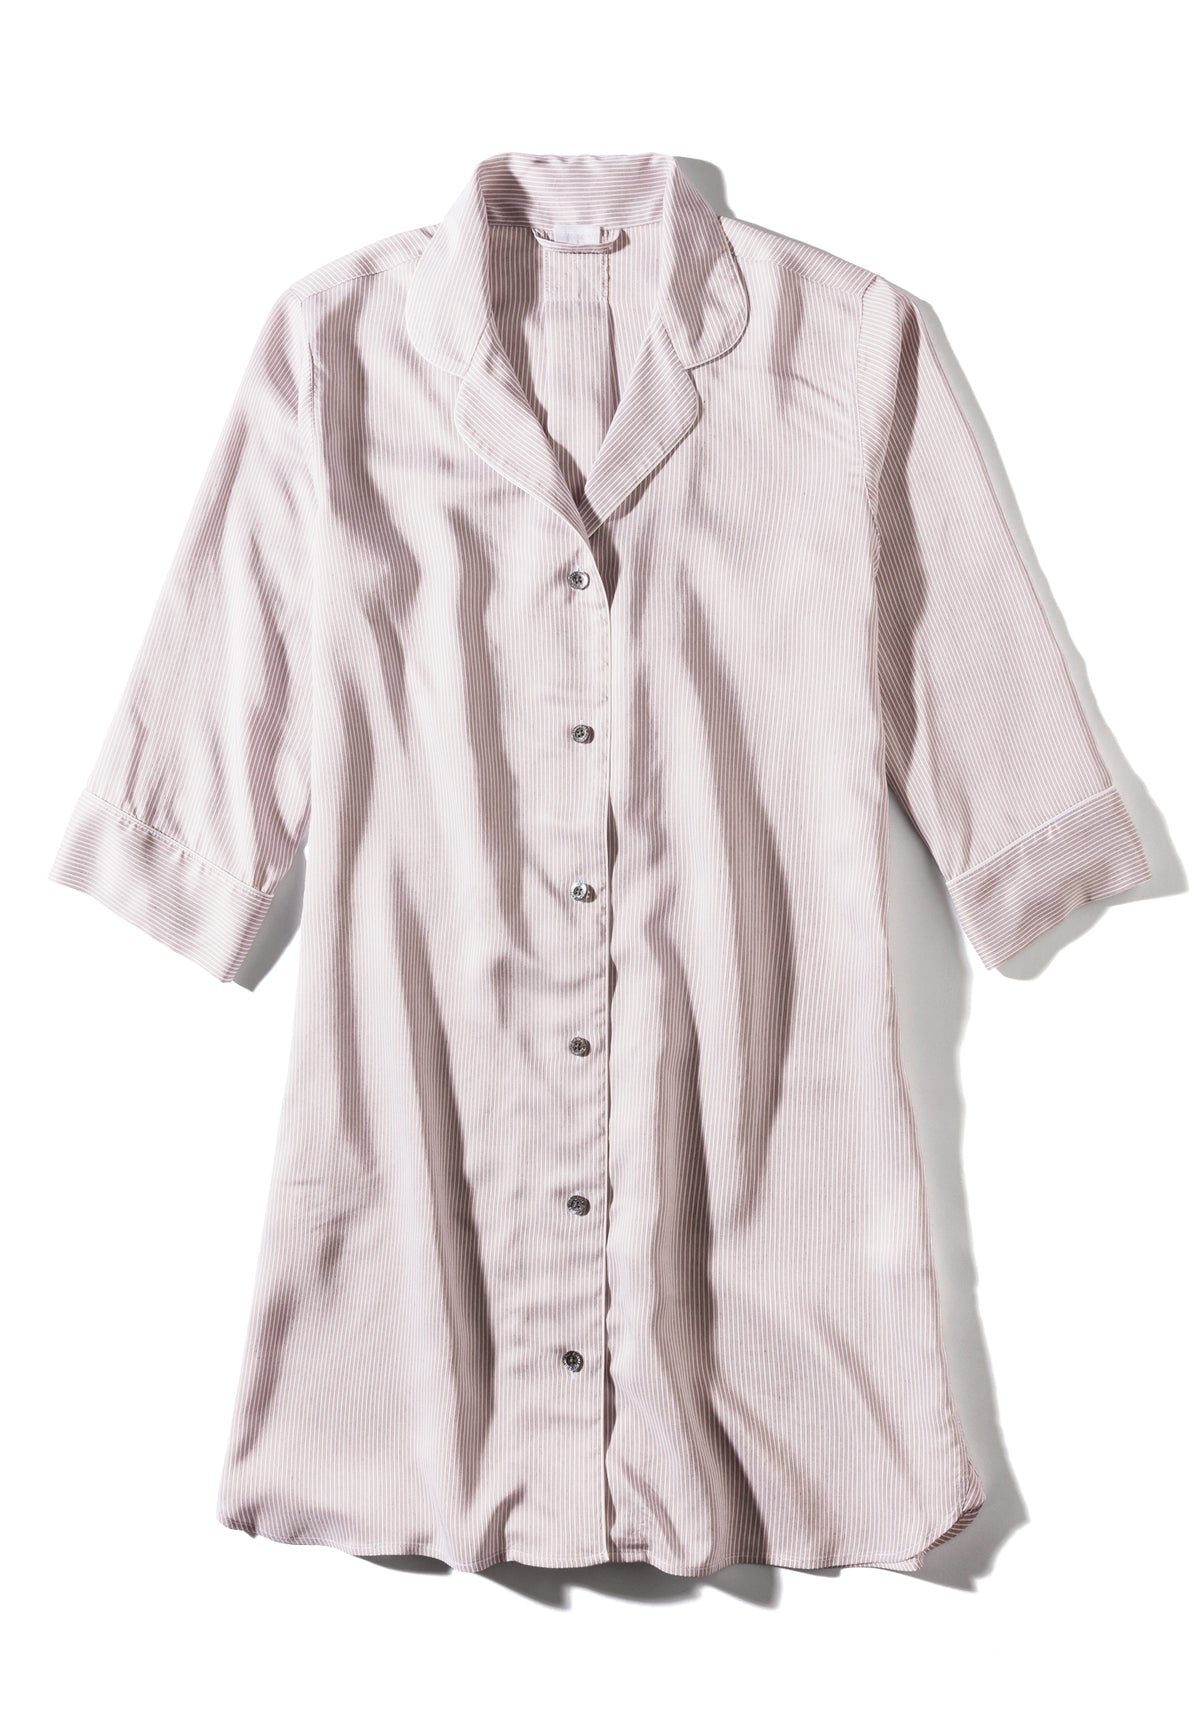 Feminine Stripes | Sleepshirt 3/4 Sleeve - sand stripes